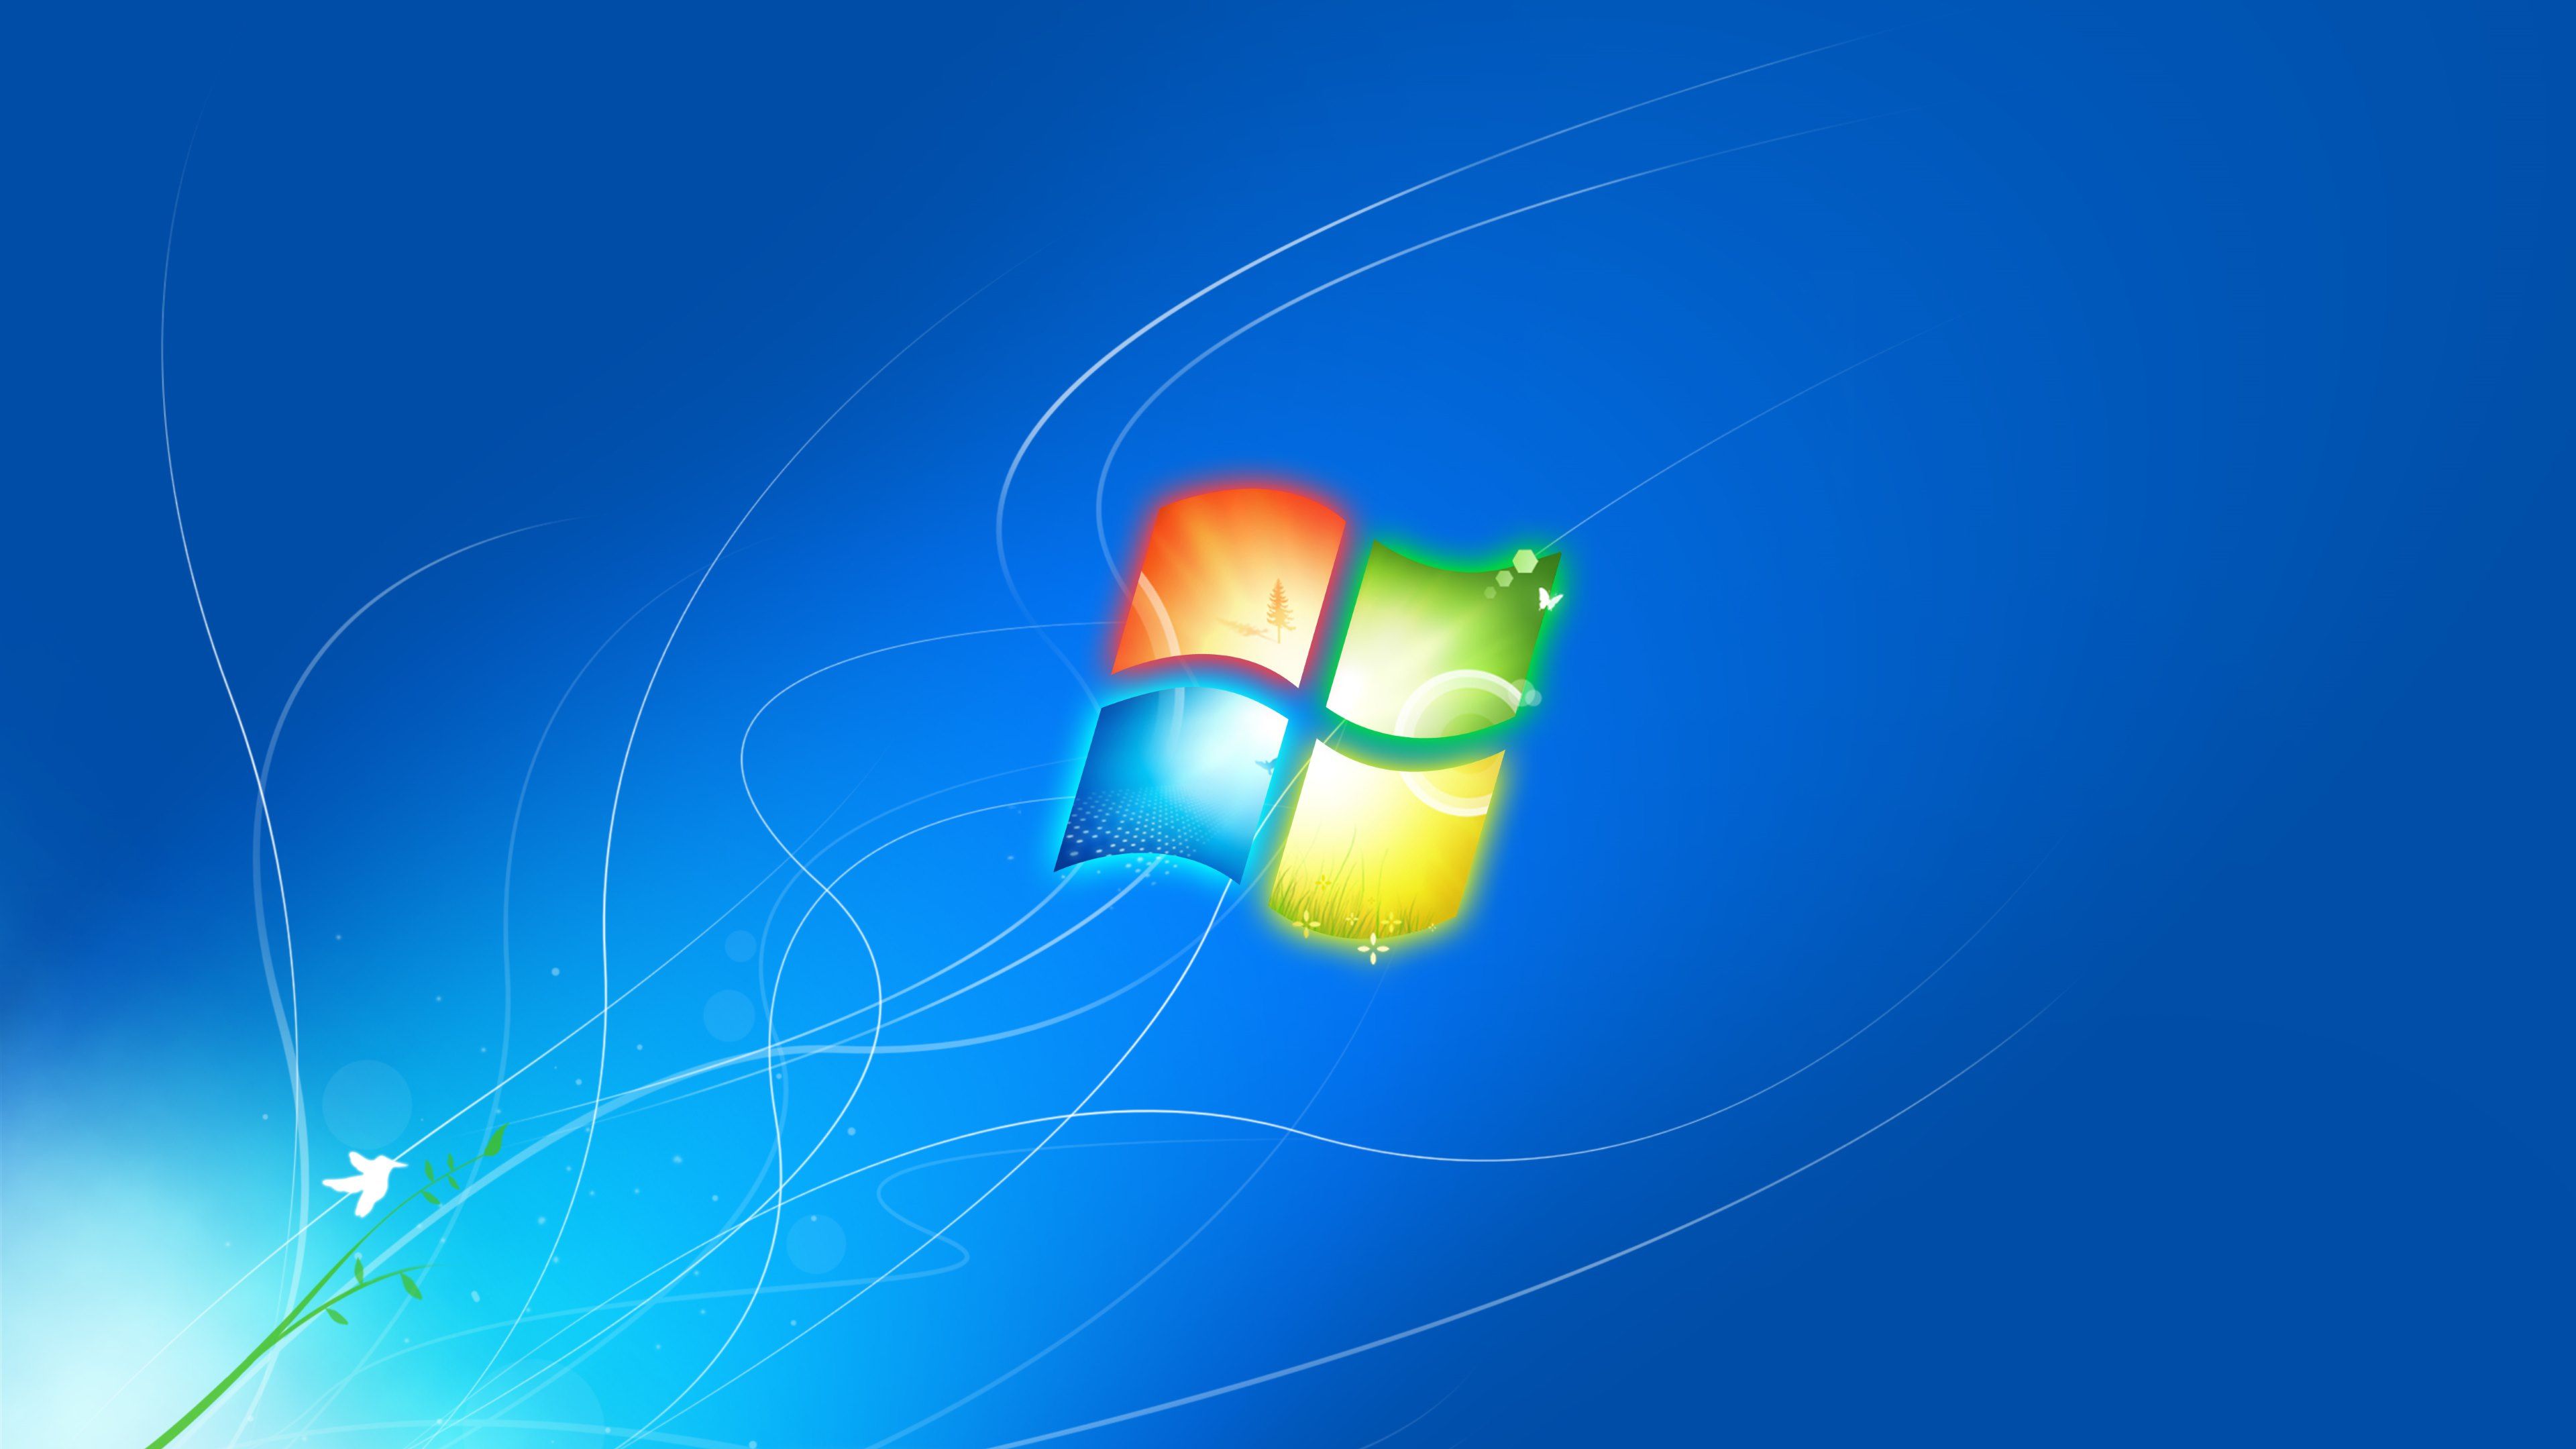 Desktop 4k Windows 7 Wallpapers - Wallpaper Cave